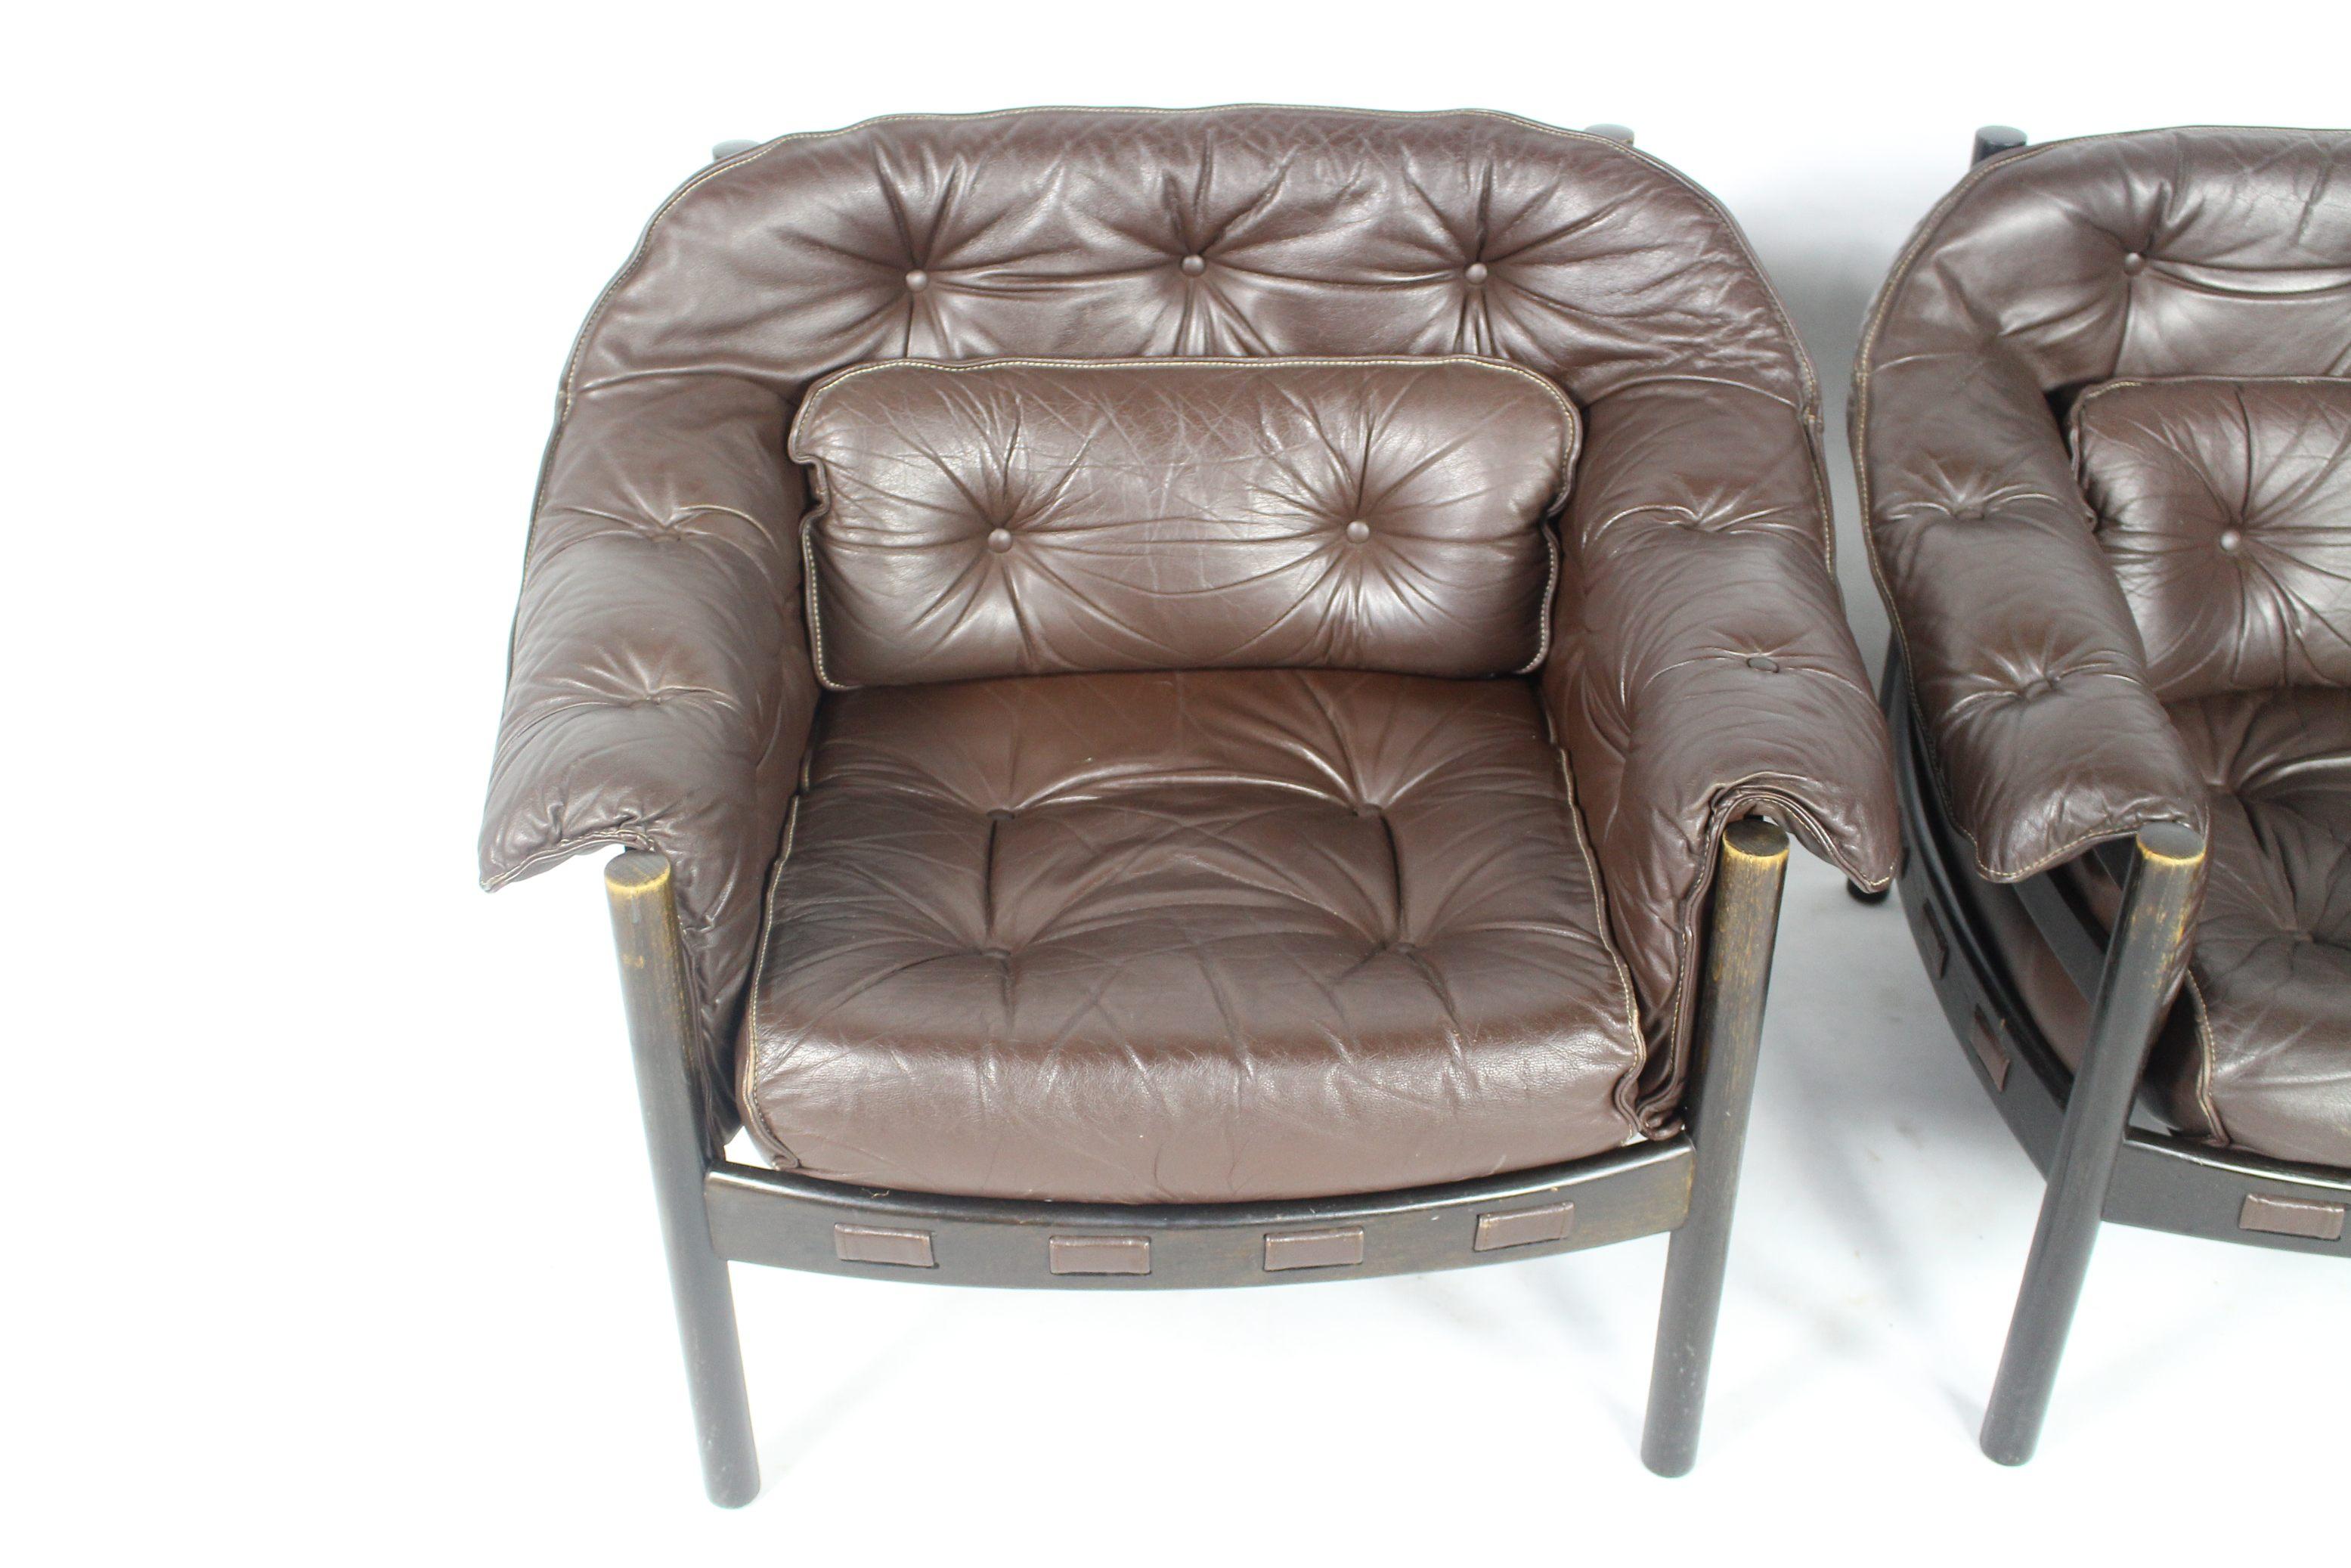 2er-Set Coja-Sessel des schwedischen Designers Sven Ellekaer.
Das schokoladenbraune Leder ist in sehr gutem Zustand.
Weicher Sitzkomfort aus den 1960er Jahren.
Preis für ein Paar.